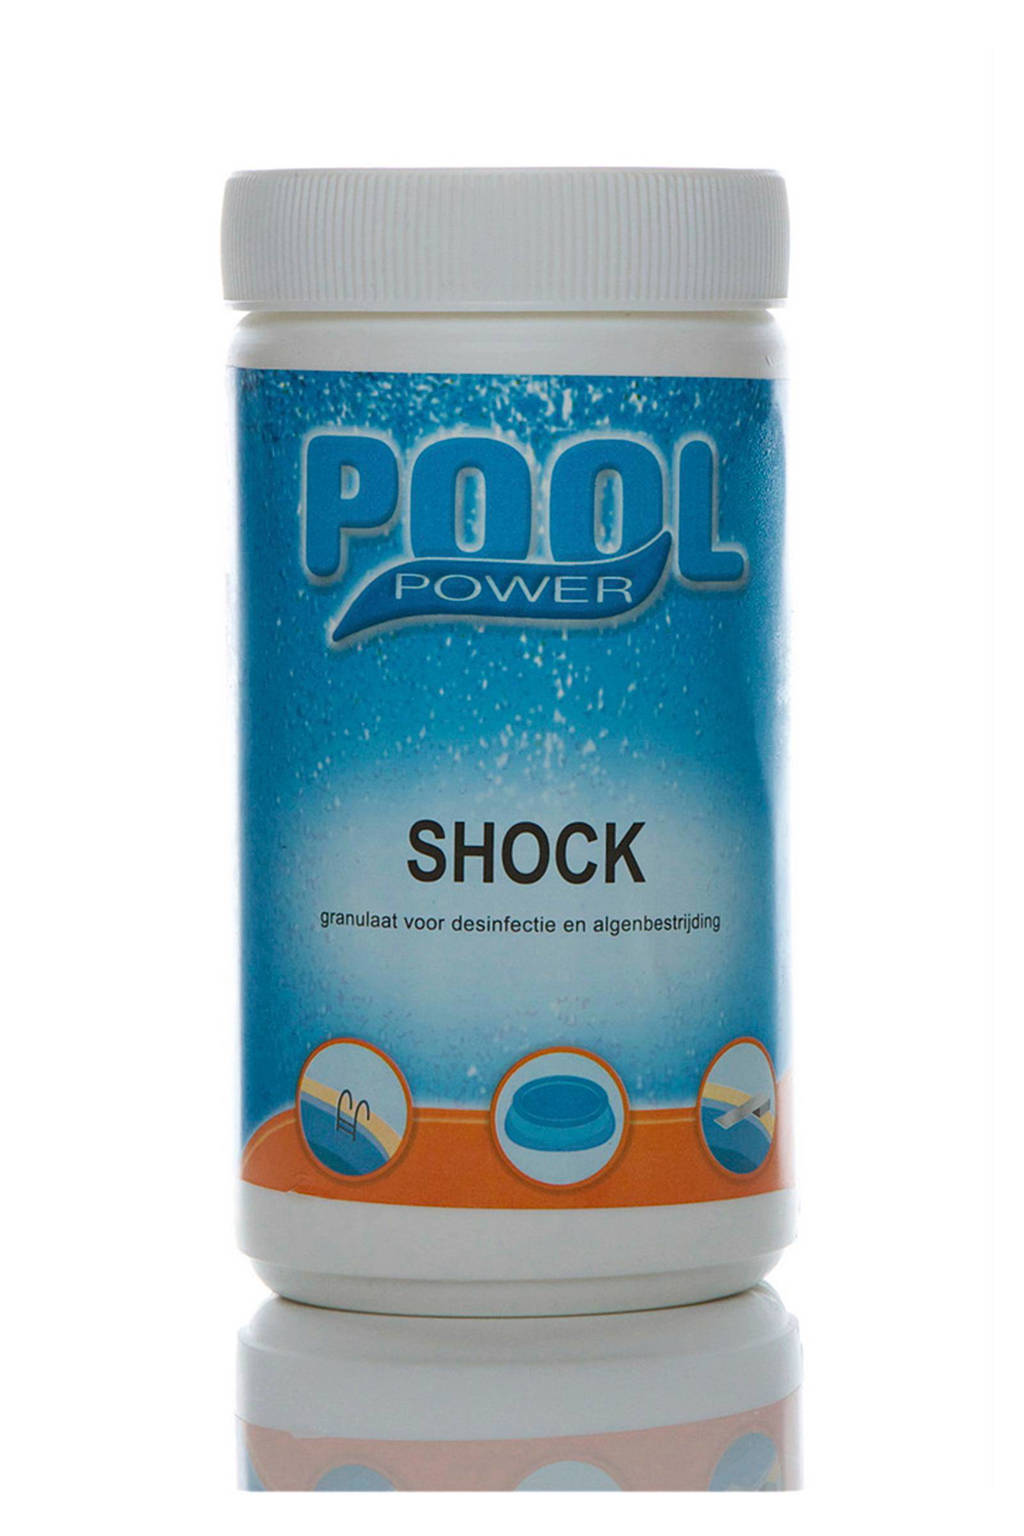 Pool power Shock 1kg chloor